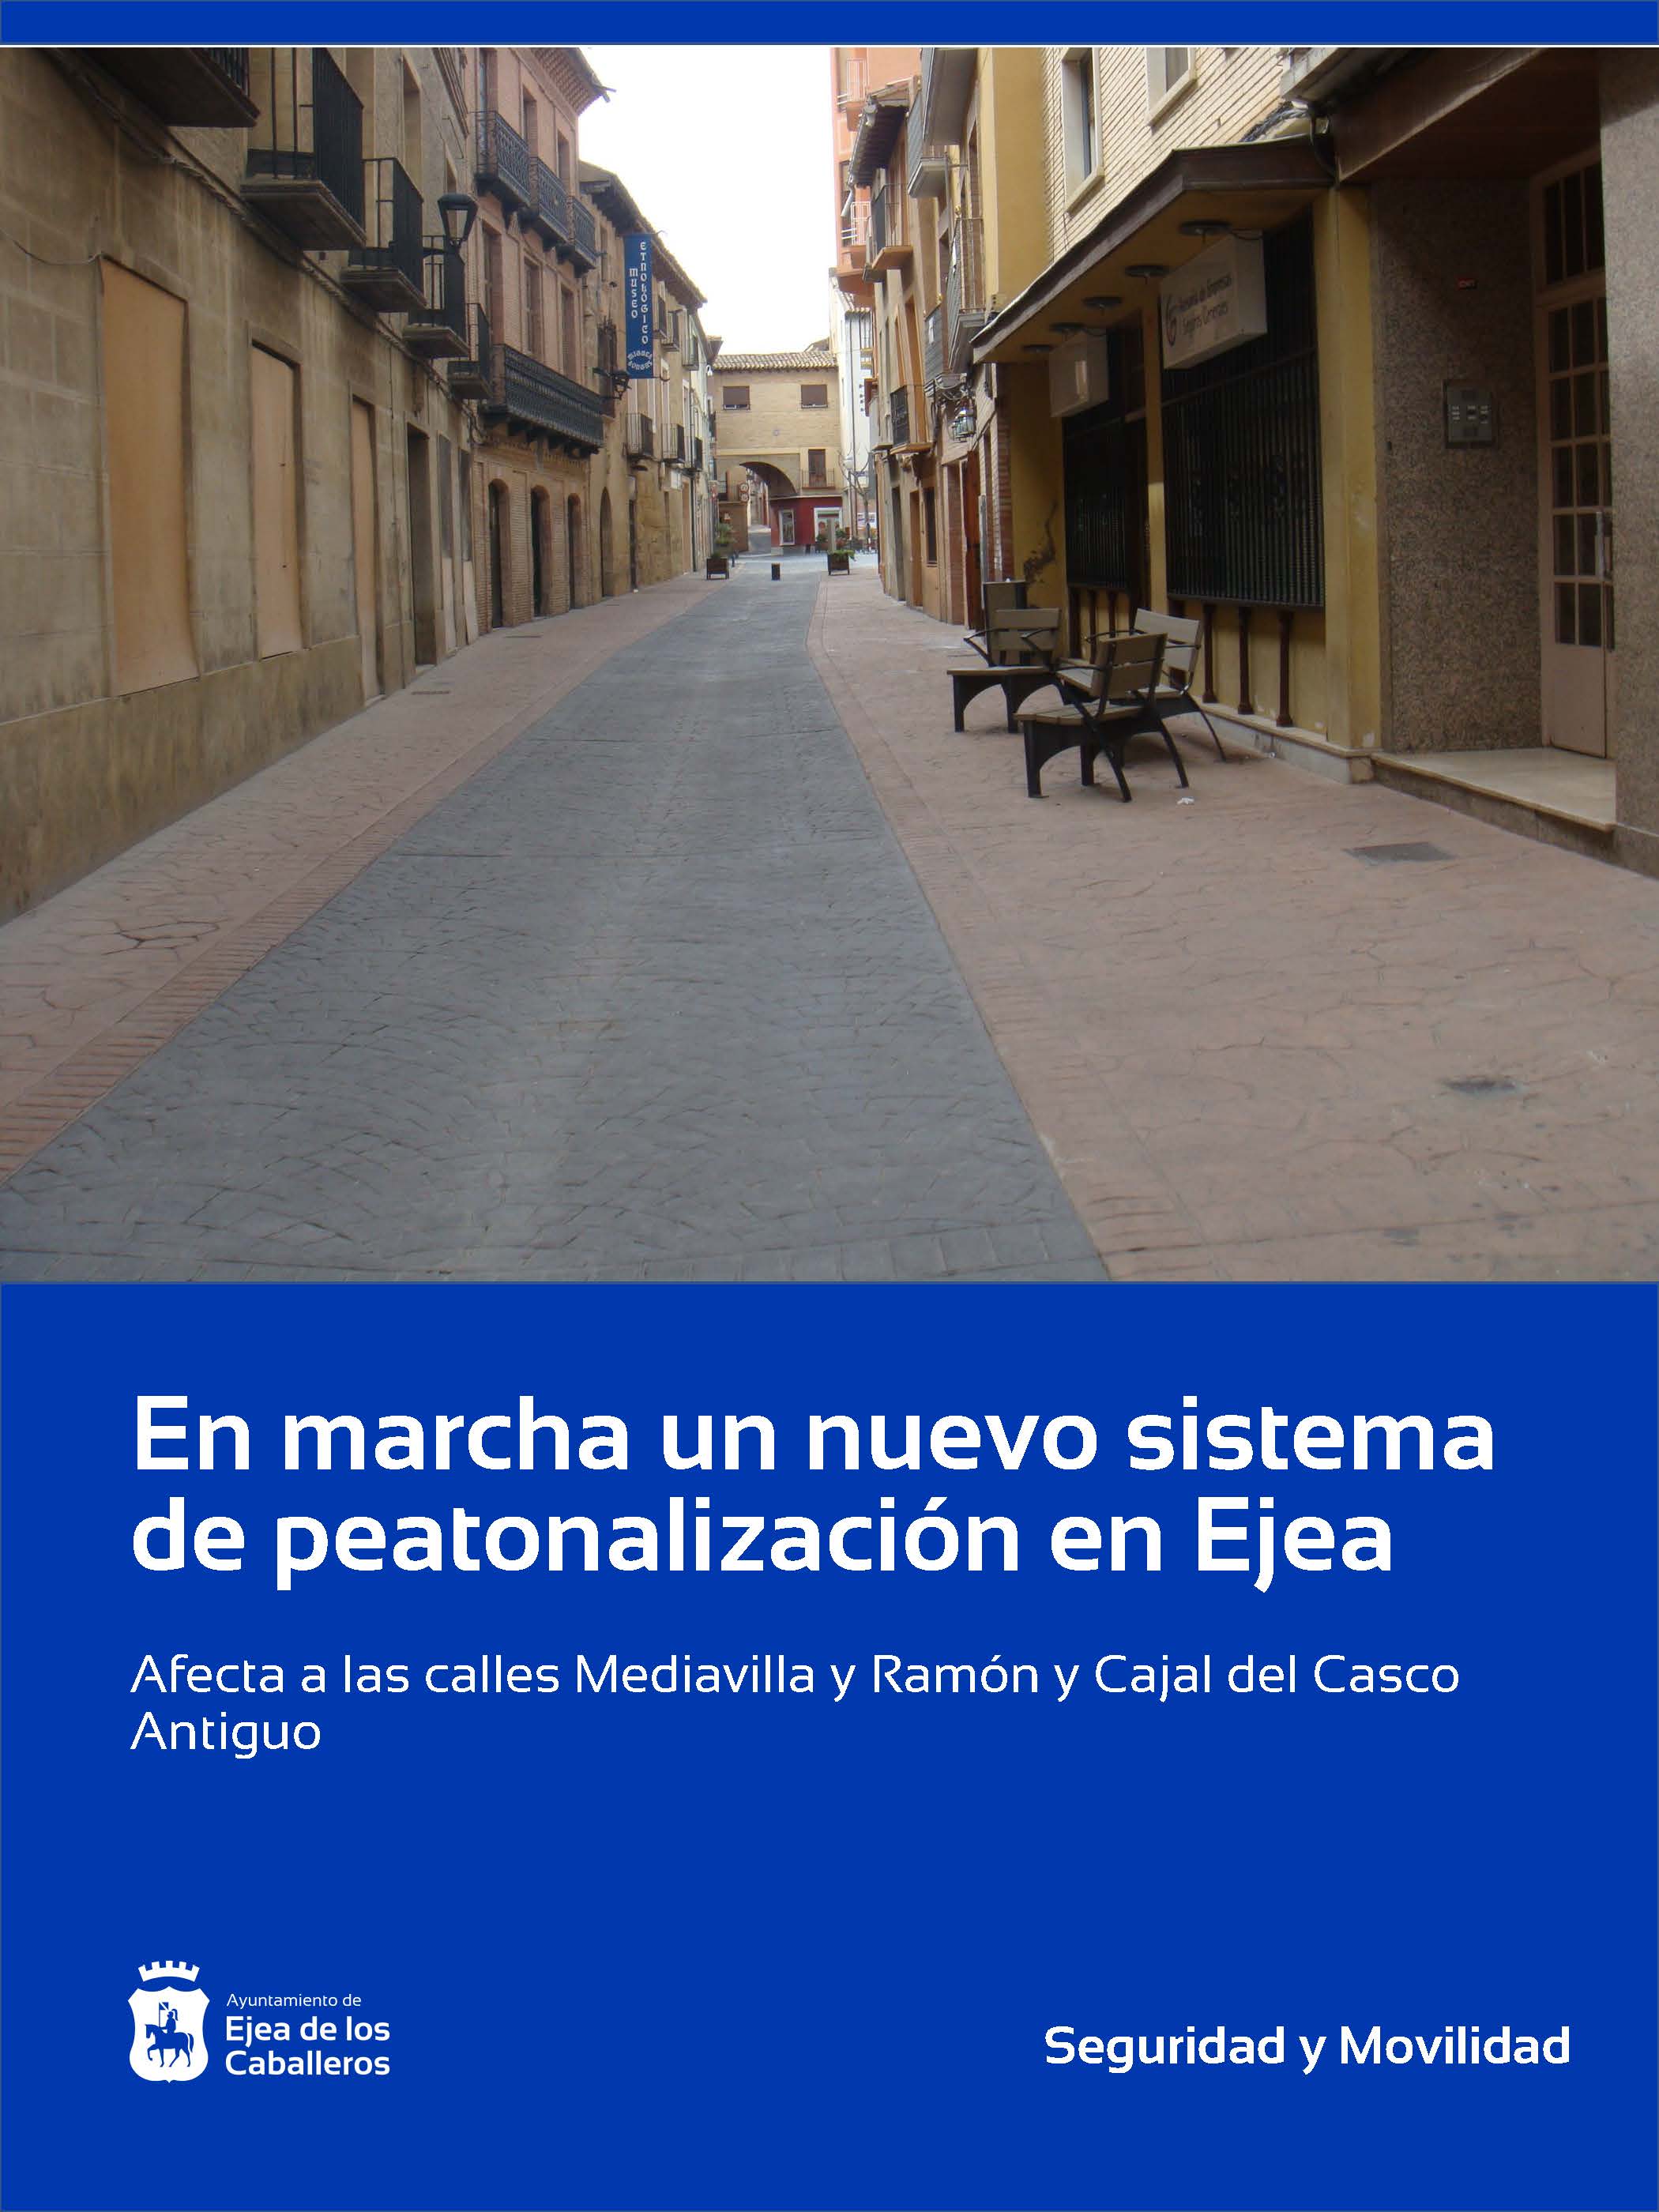 En este momento estás viendo En marcha el nuevo sistema de peatonalización de las calles Mediavilla y Ramón y Cajal de Ejea de los Caballeros